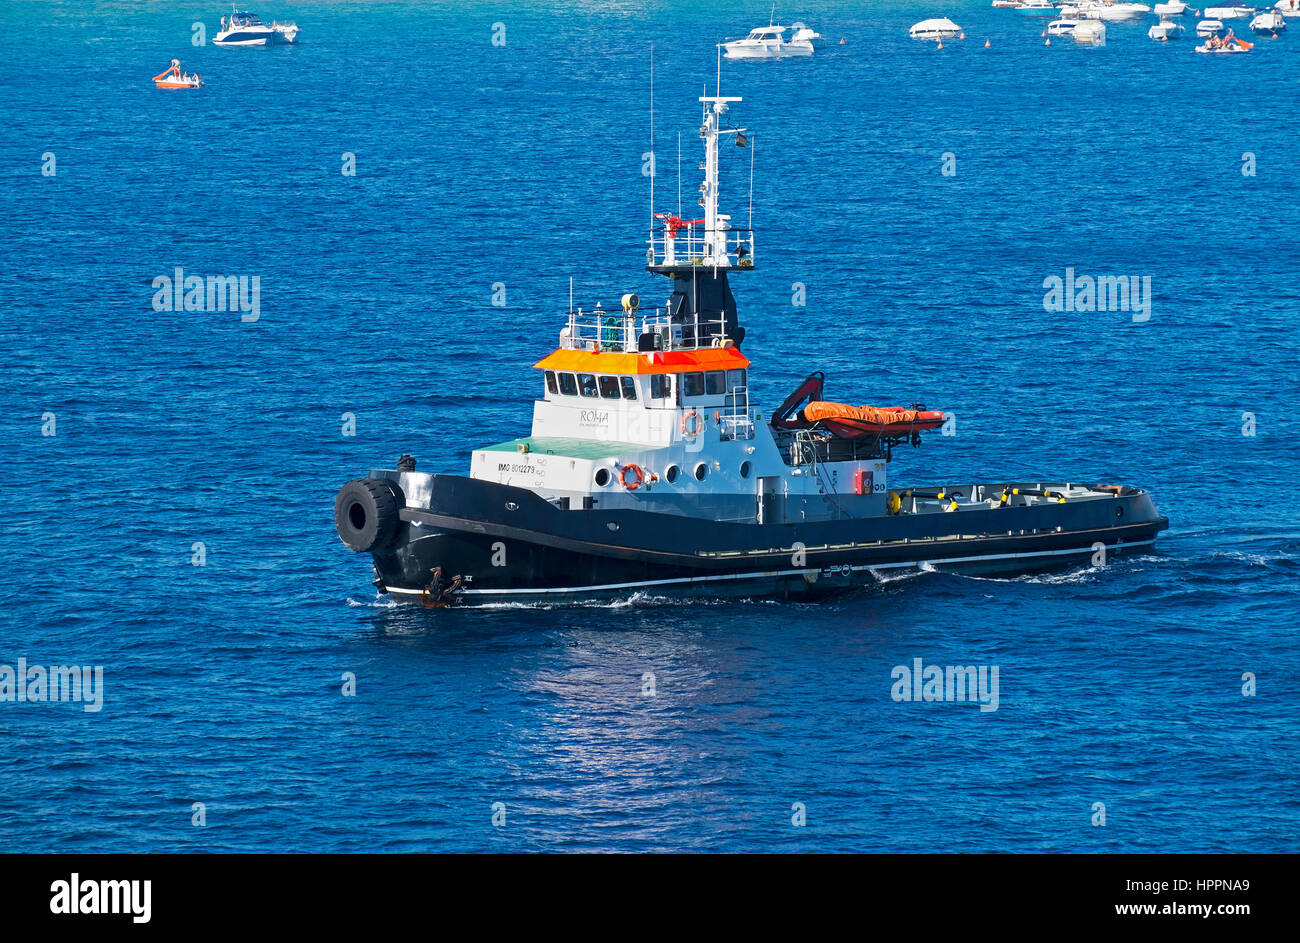 Un rimorchiatore nel mare Mediterraneo nei pressi della città di Palamos in Spagna Foto Stock